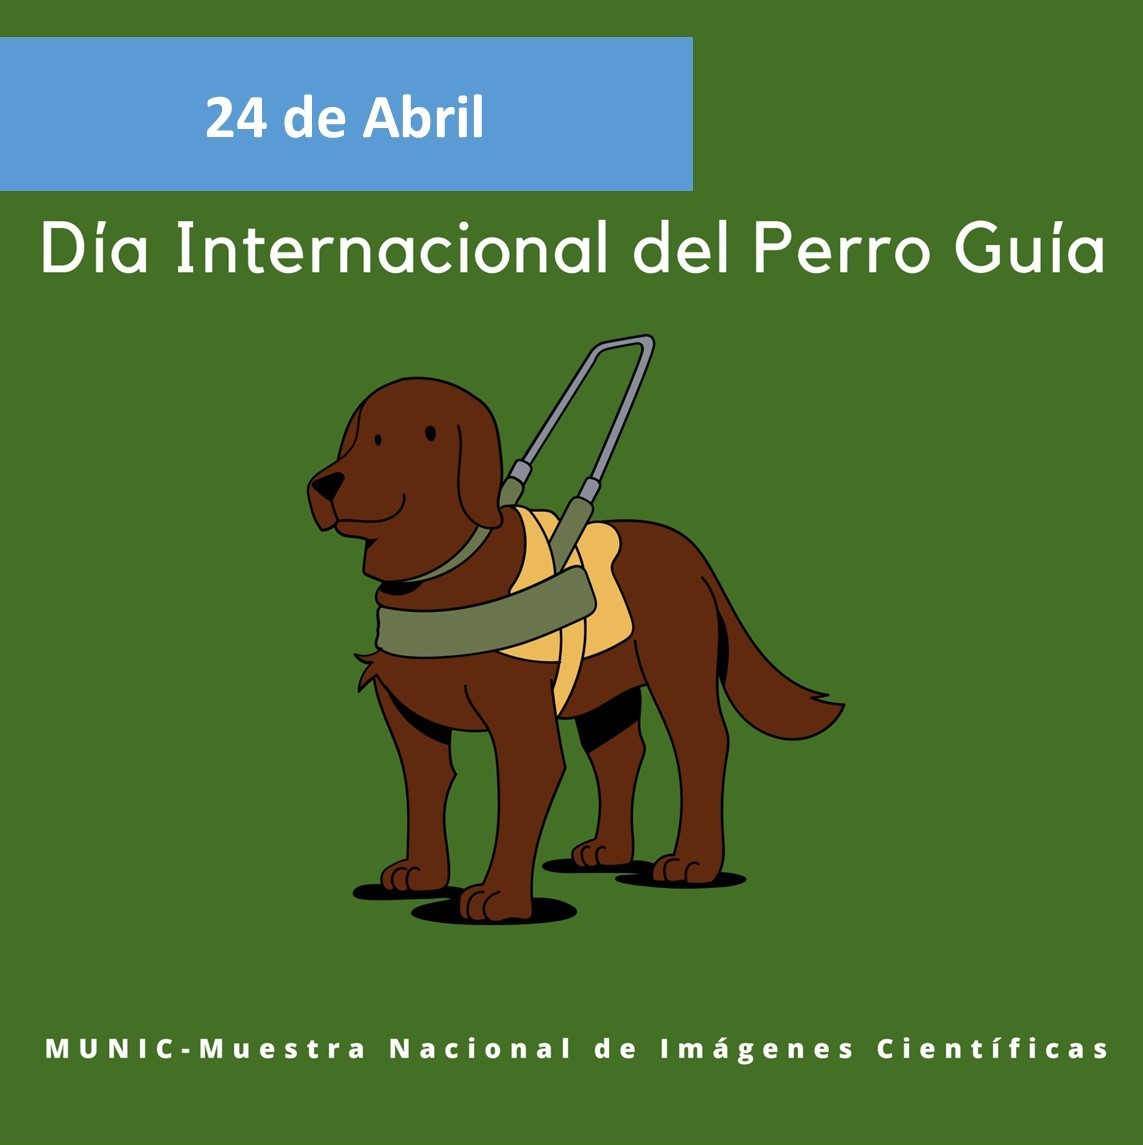 El último miércoles de abril se conmemora el #DíaInternacionaldelPerroGuíaoPerrodeTrabajo. Estos nobles animales son entrenados con la finalidad de dar apoyo a personas con discapacidad visual, para su movilidad e independencia. #MUNIContigo #DivulgaciondelaCiencia